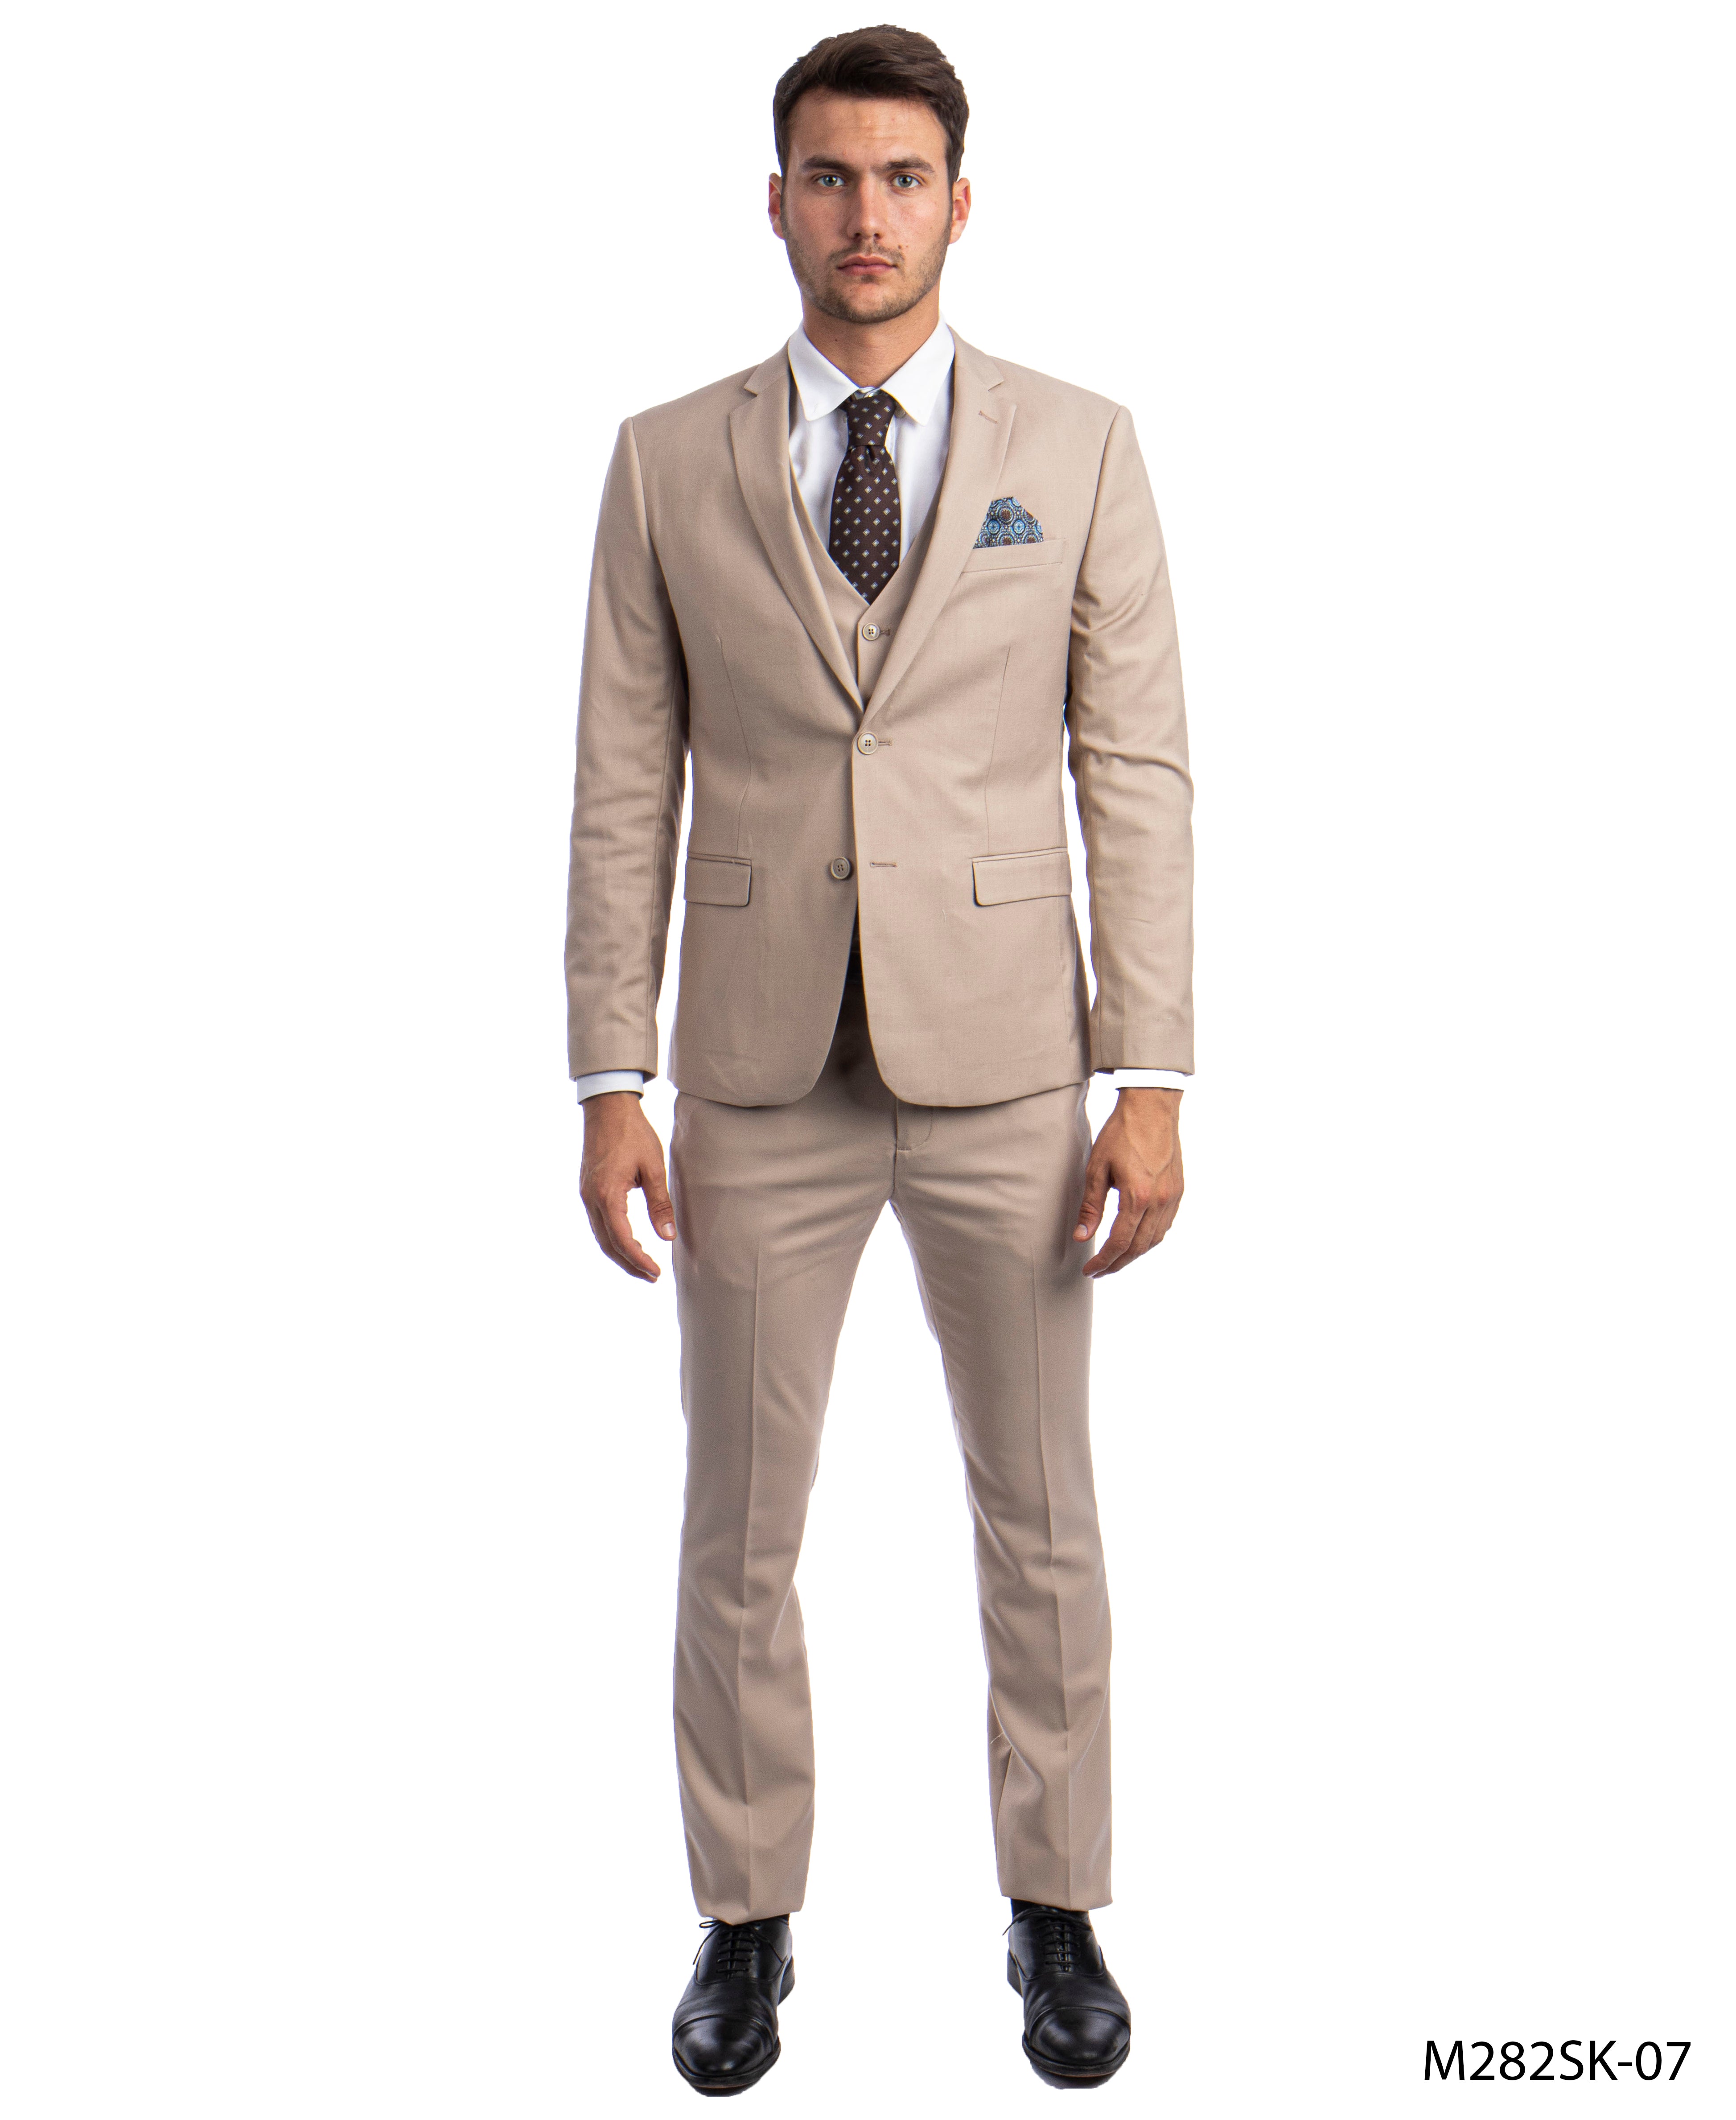 title:Sean Alexander M.Tan 3 PC Solid Suit Skinny Fit Suits;color:M.Tan